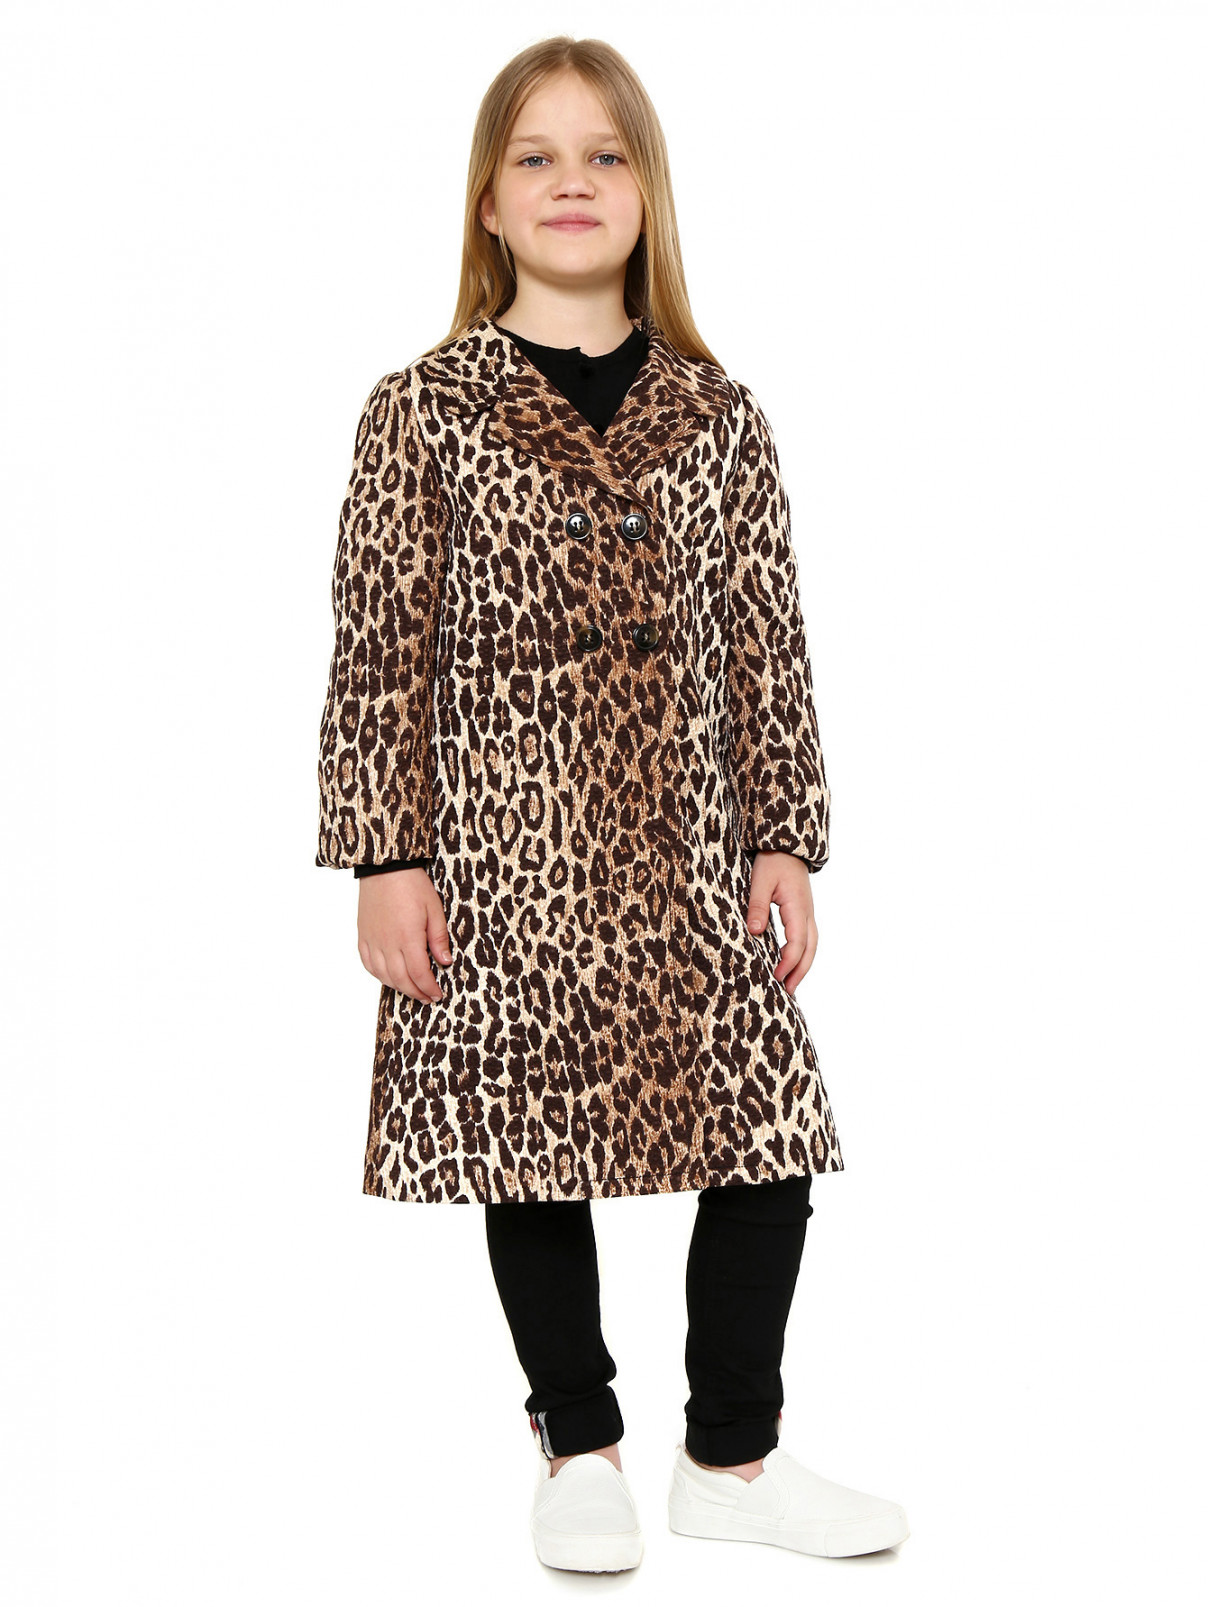 Пальто из шелка и шерсти с узором Dolce & Gabbana  –  Модель Общий вид  – Цвет:  Коричневый